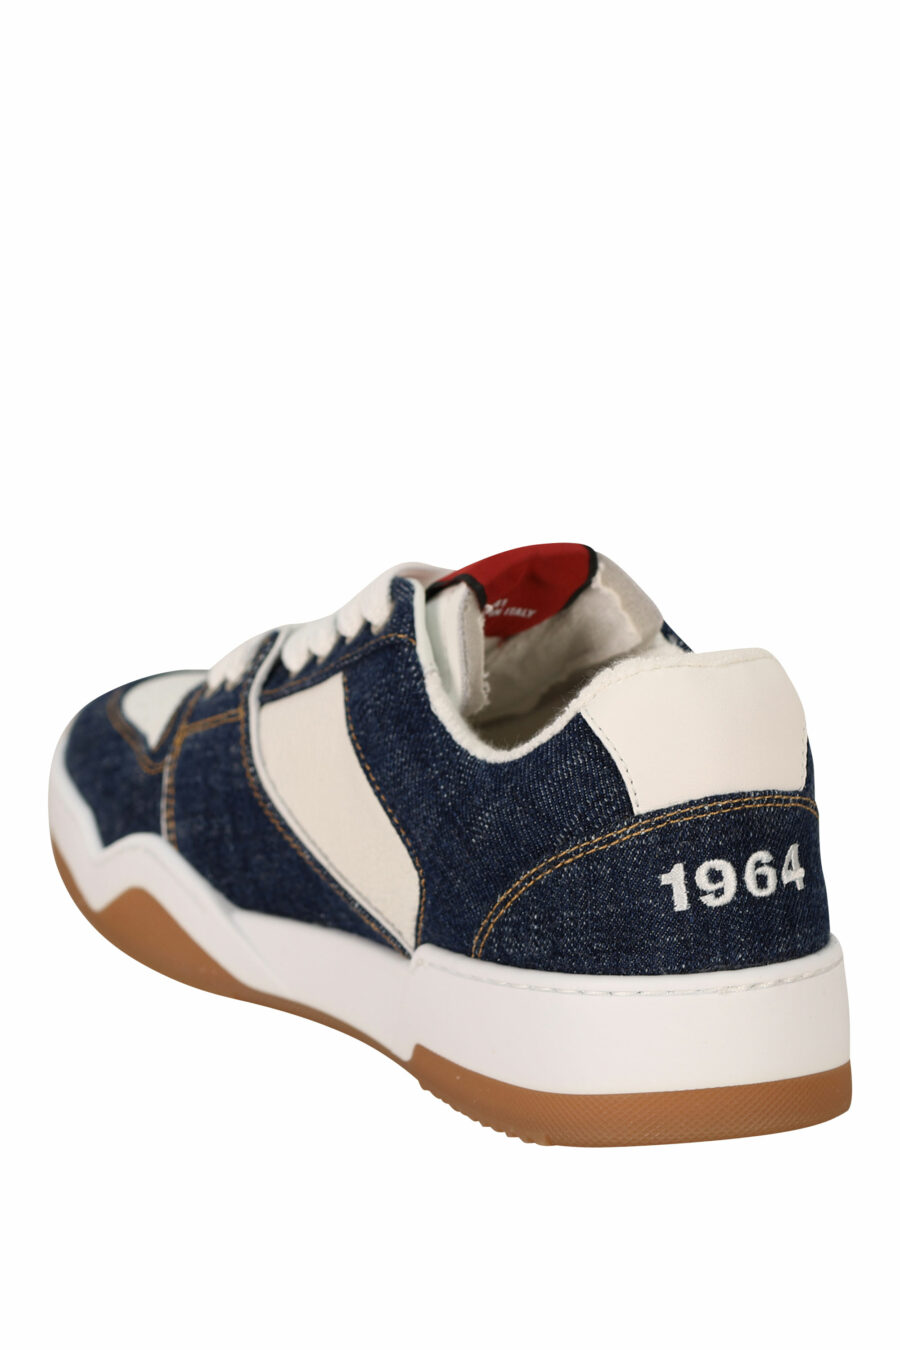 Zapatillas azules "spyker" con blanco y logo - 8055777305911 3